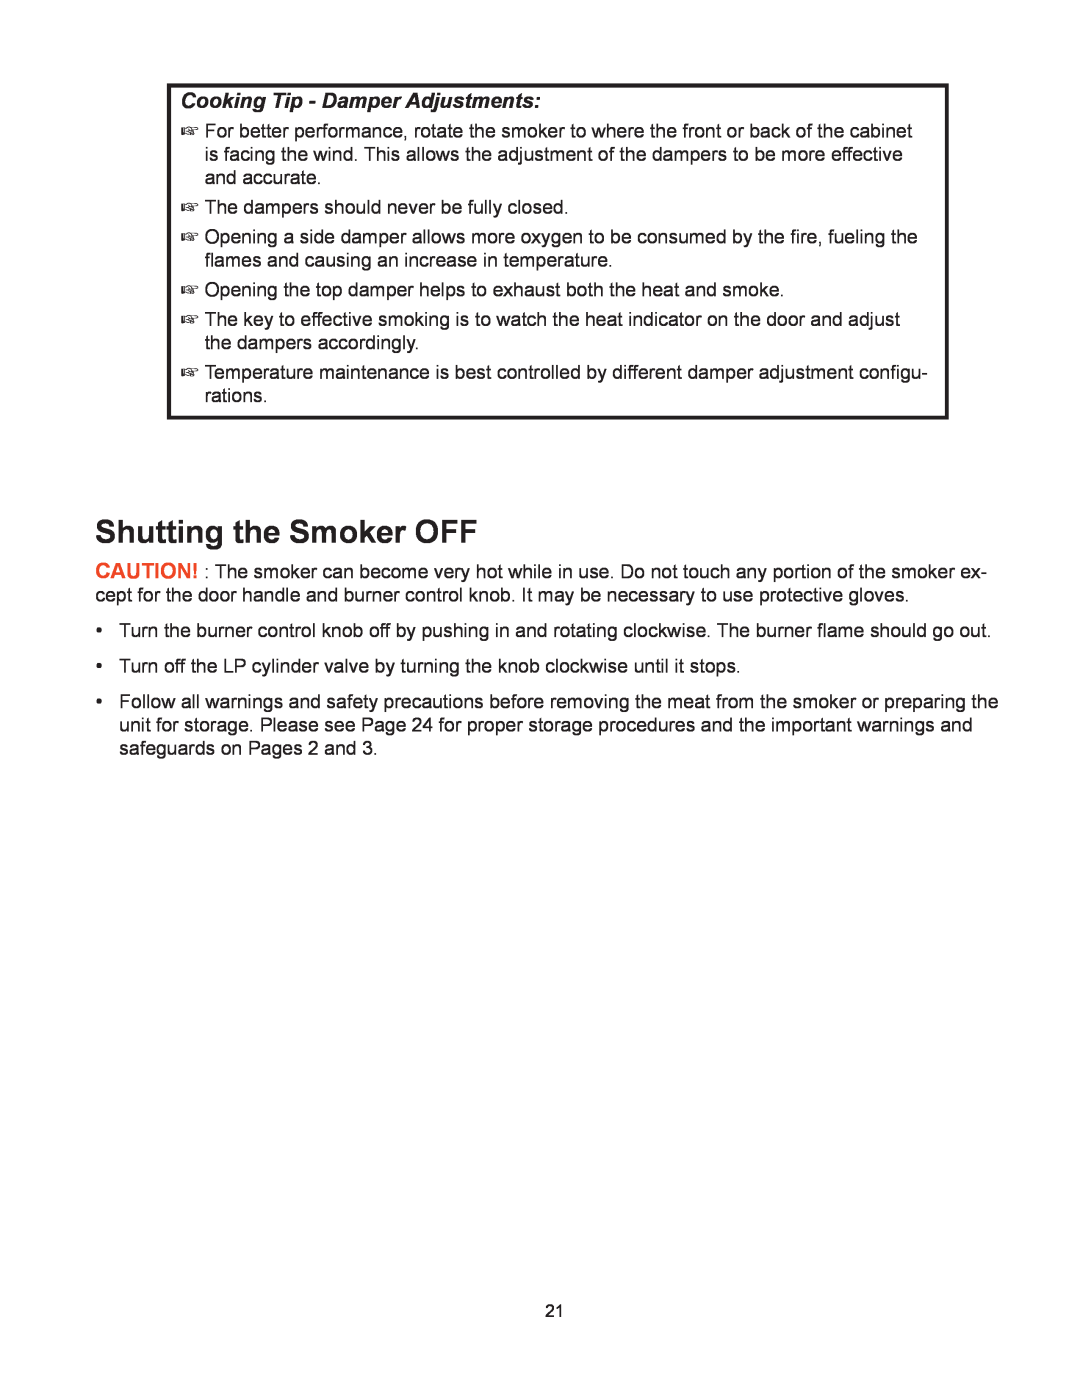 CFM Corporation 3405BG owner manual Shutting the Smoker OFF, Cooking Tip - Damper Adjustments 